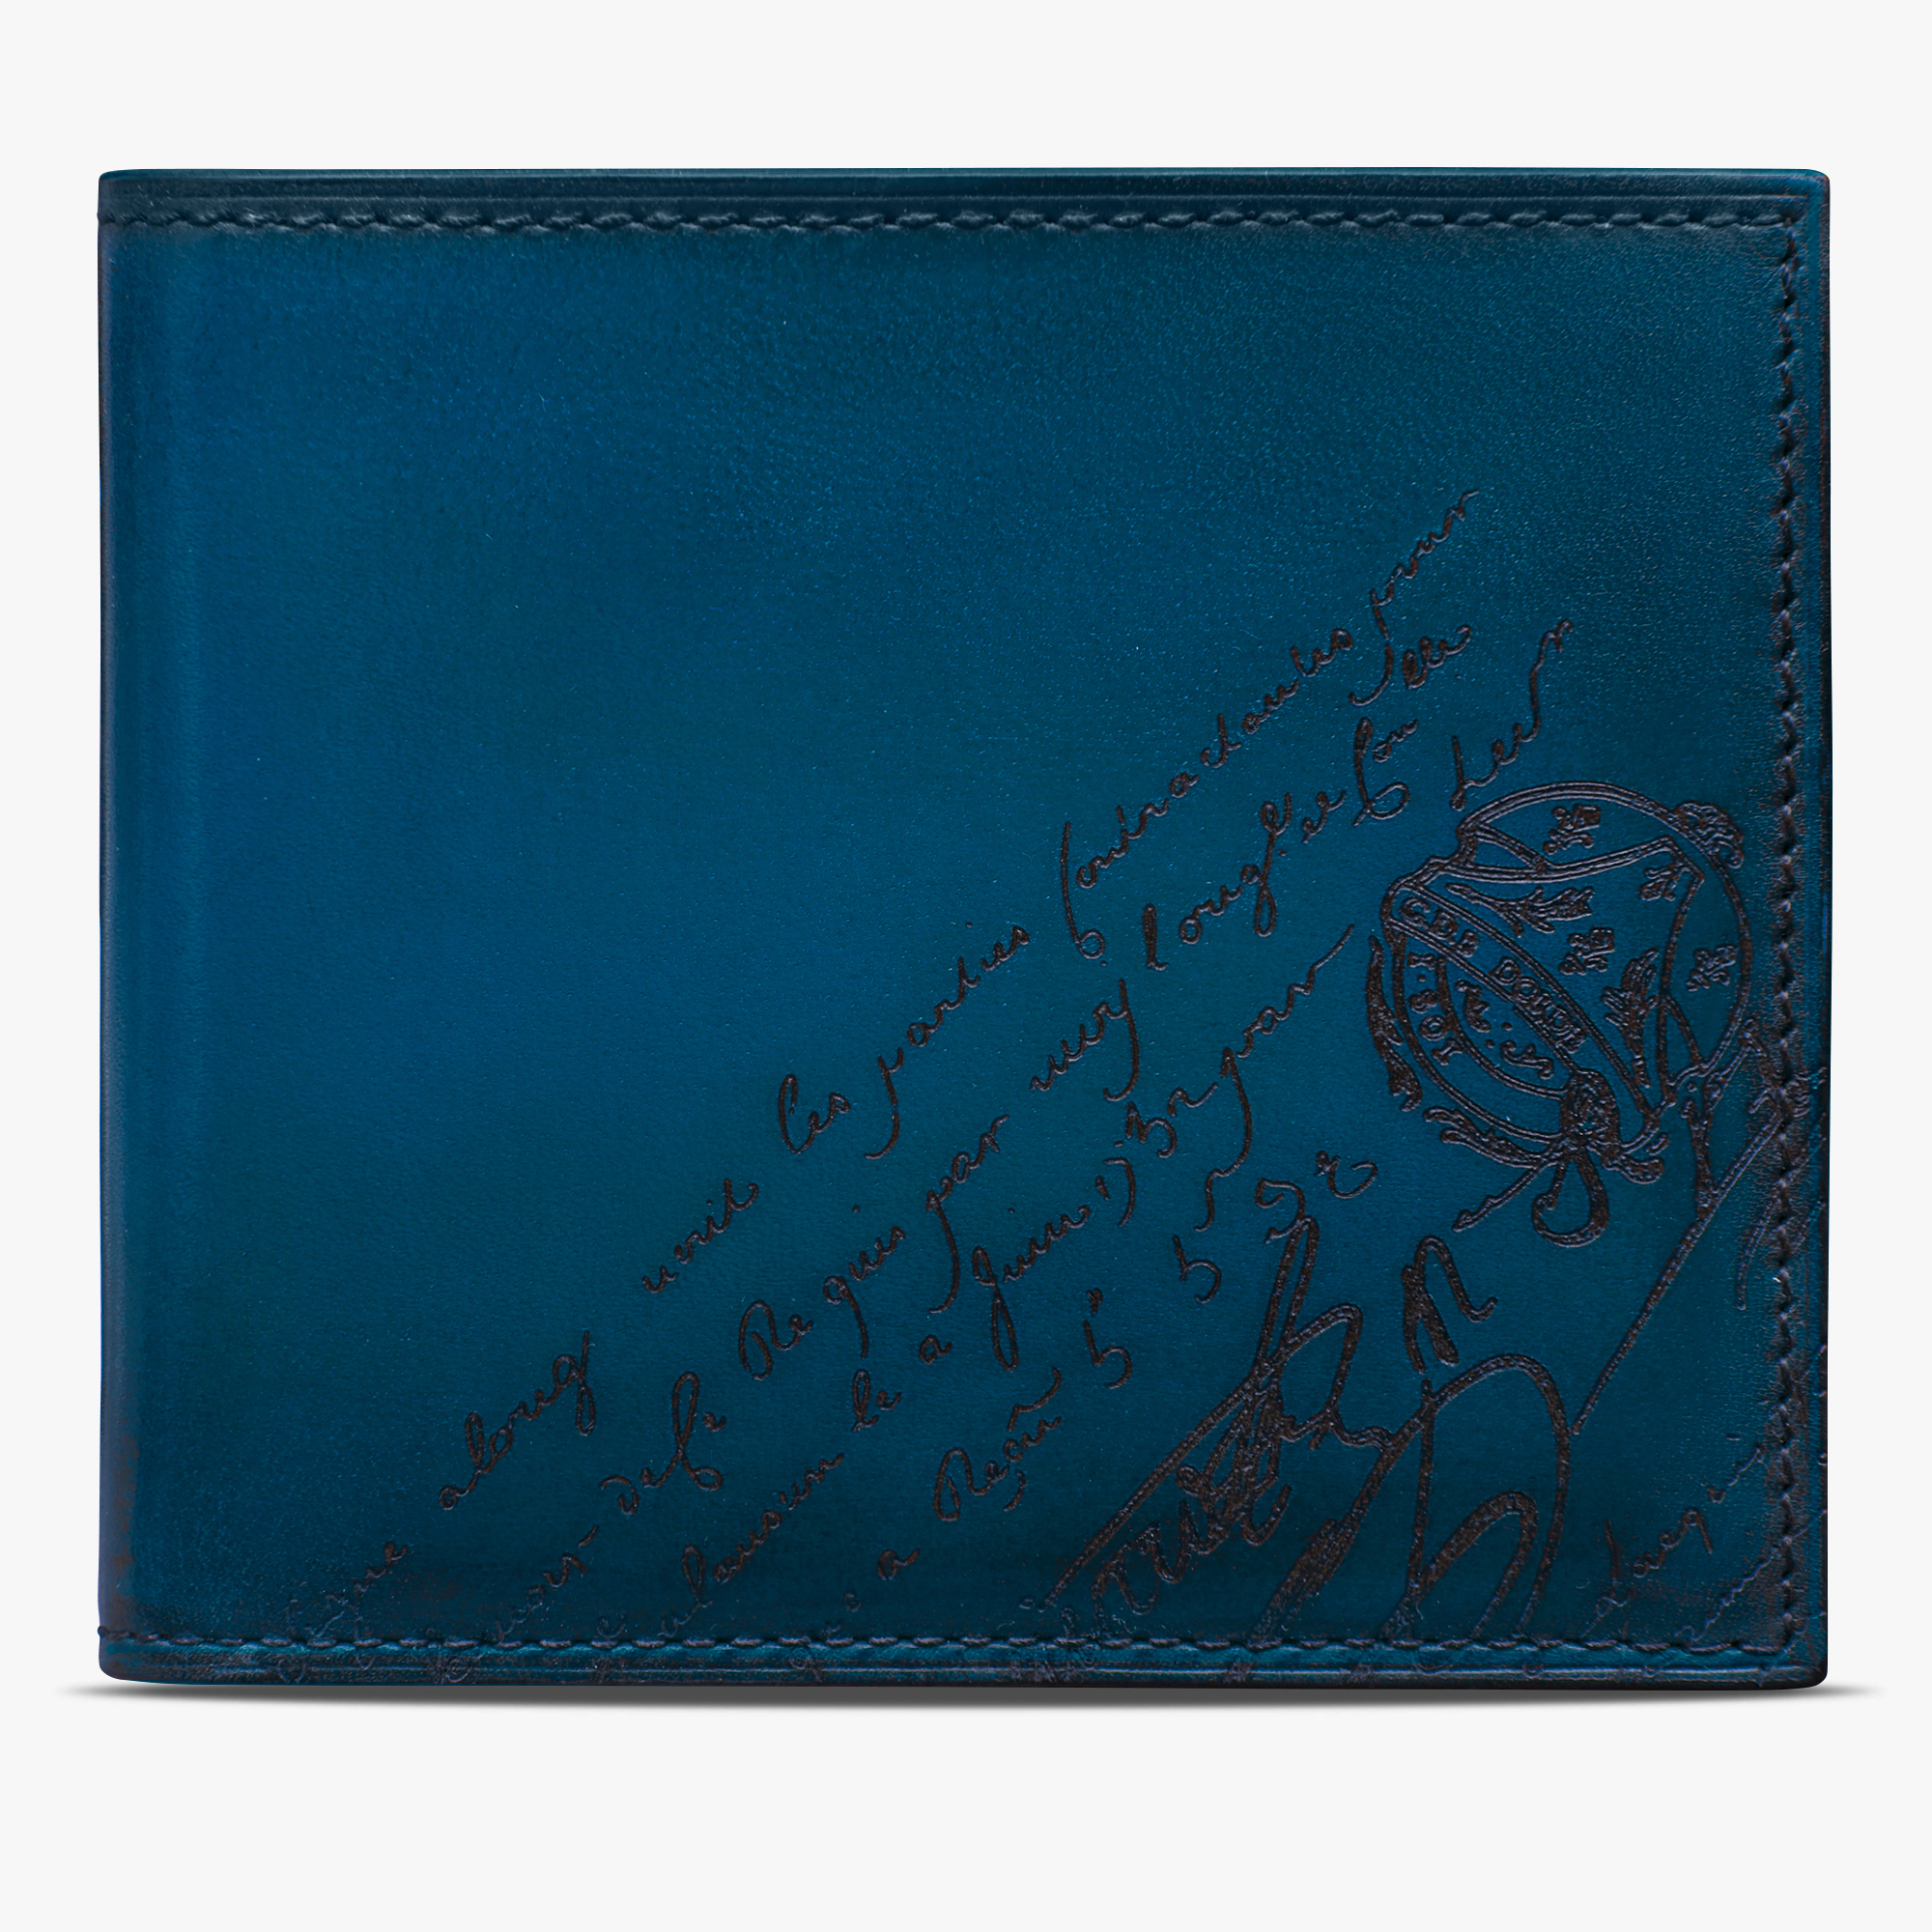 Makore Scritto Leather Wallet | Berluti US